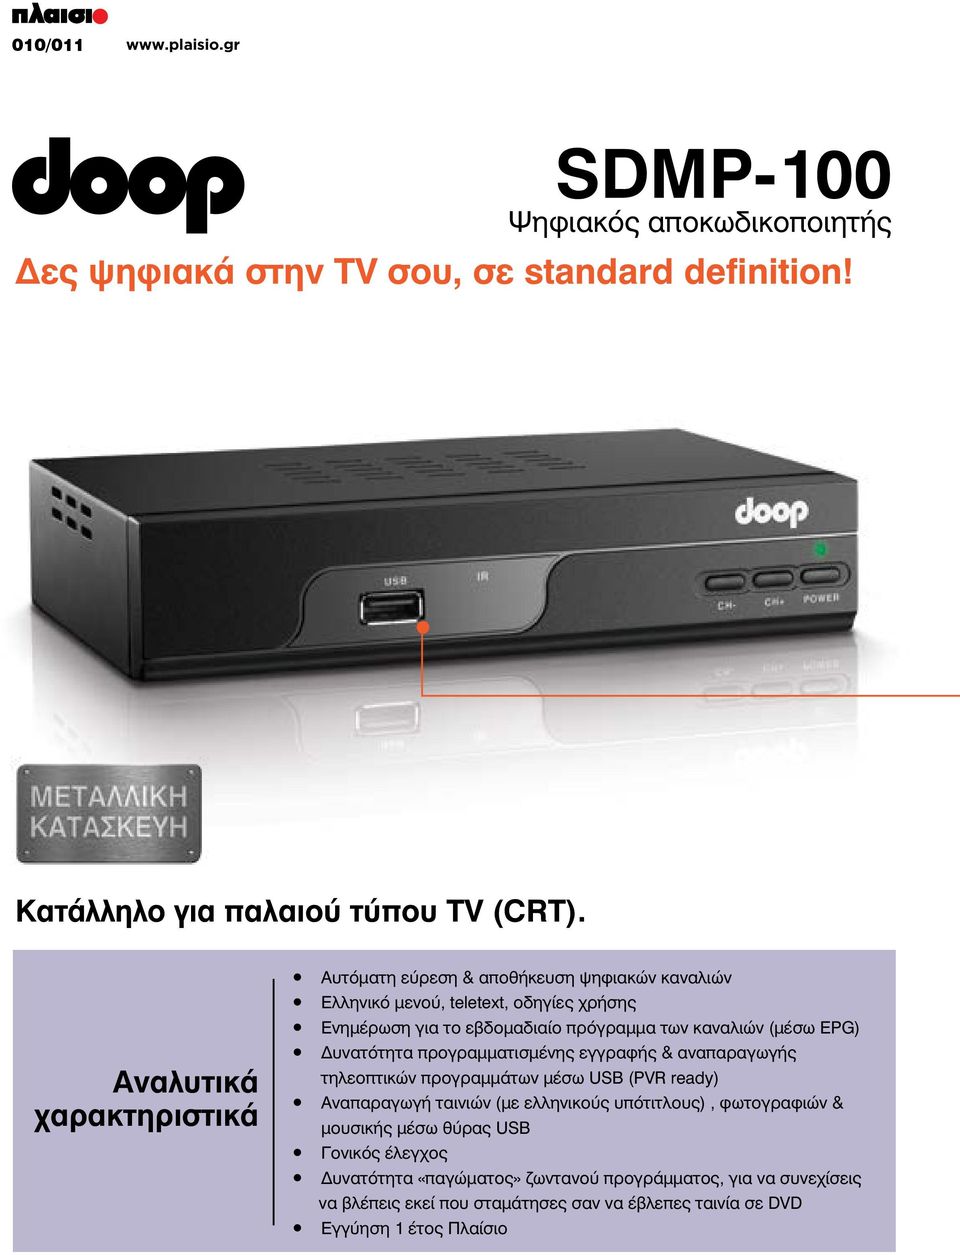 (μέσω EPG) Δυνατότητα προγραμματισμένης εγγραφής & αναπαραγωγής τηλεοπτικών προγραμμάτων μέσω USB (PVR ready) Αναπαραγωγή ταινιών (με ελληνικούς υπότιτλους),